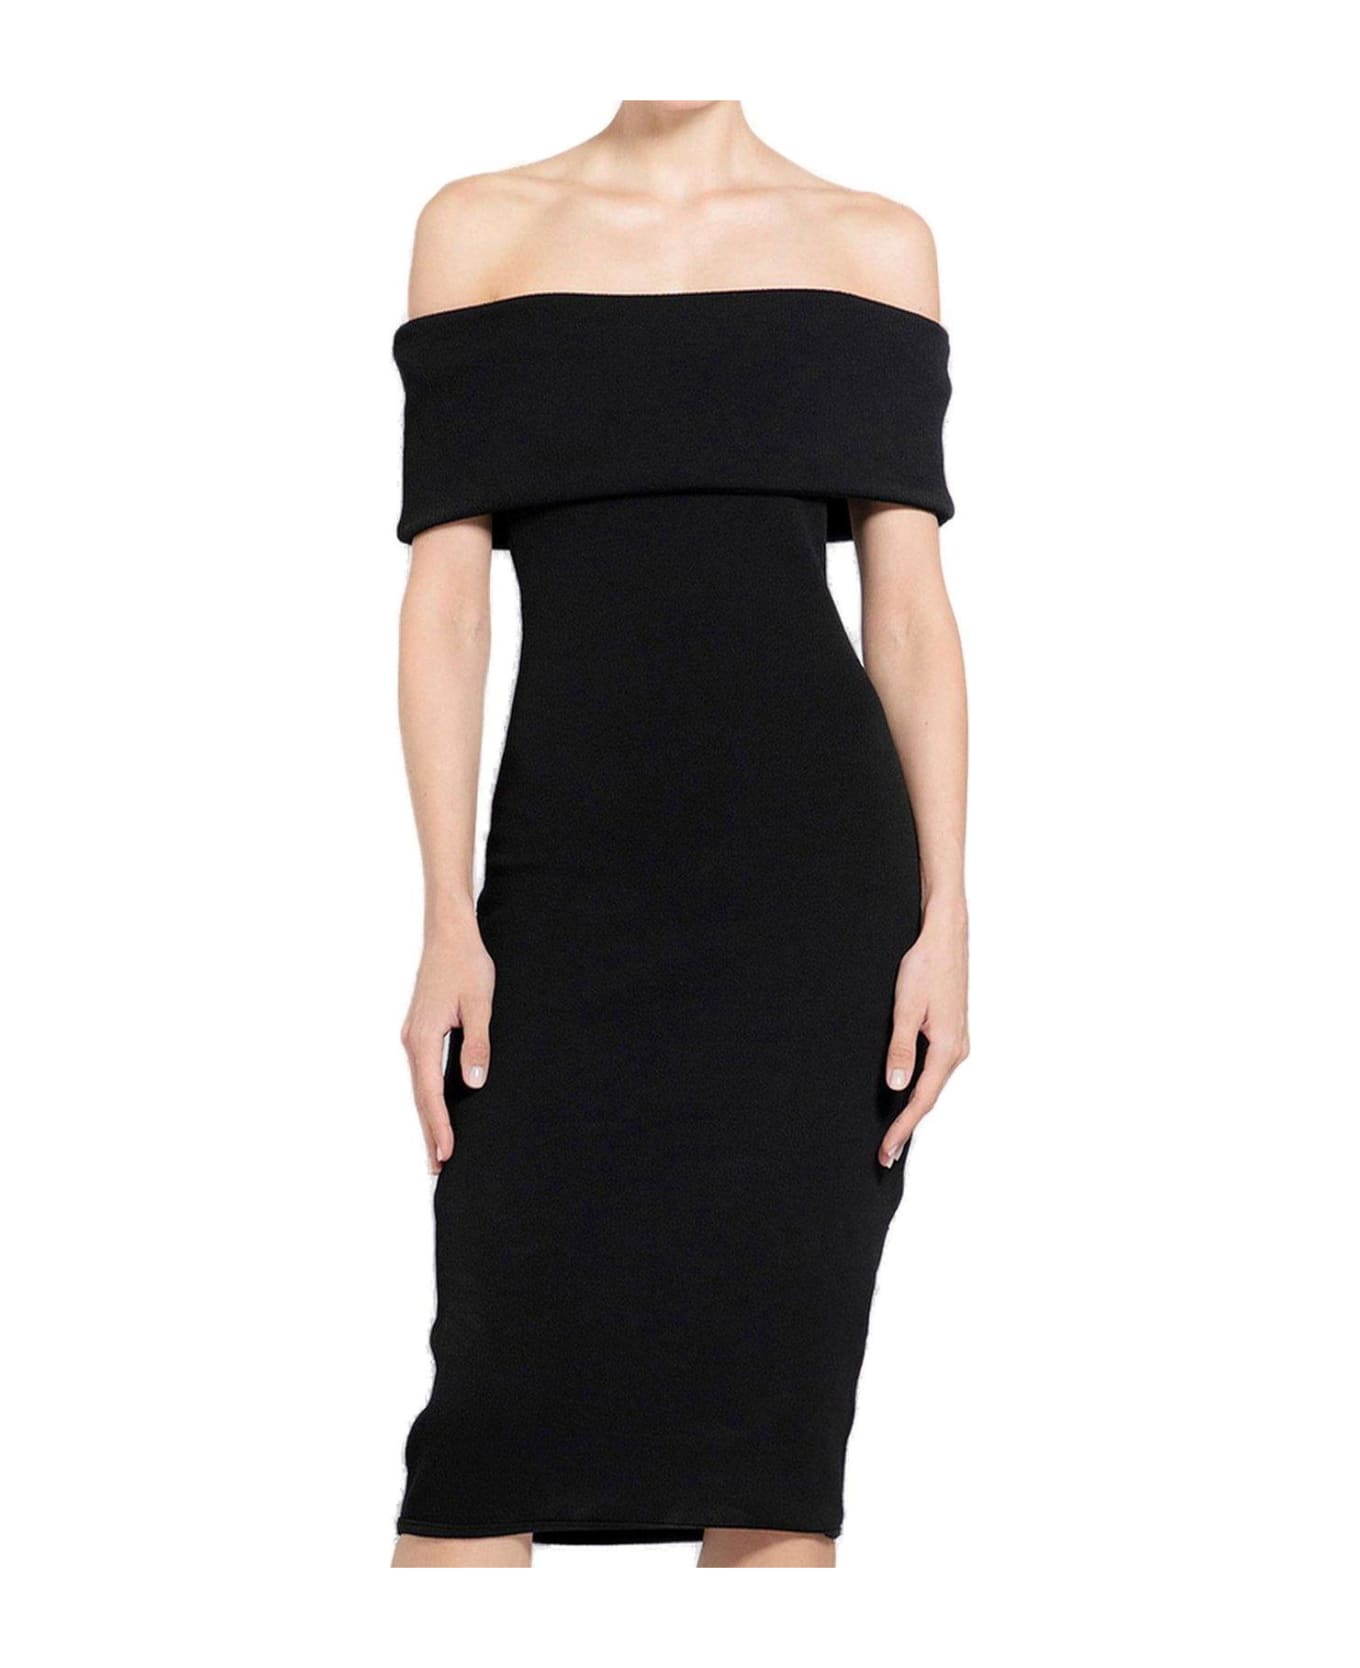 Bottega Veneta Off-the-shoulder Fitted Dress - Black